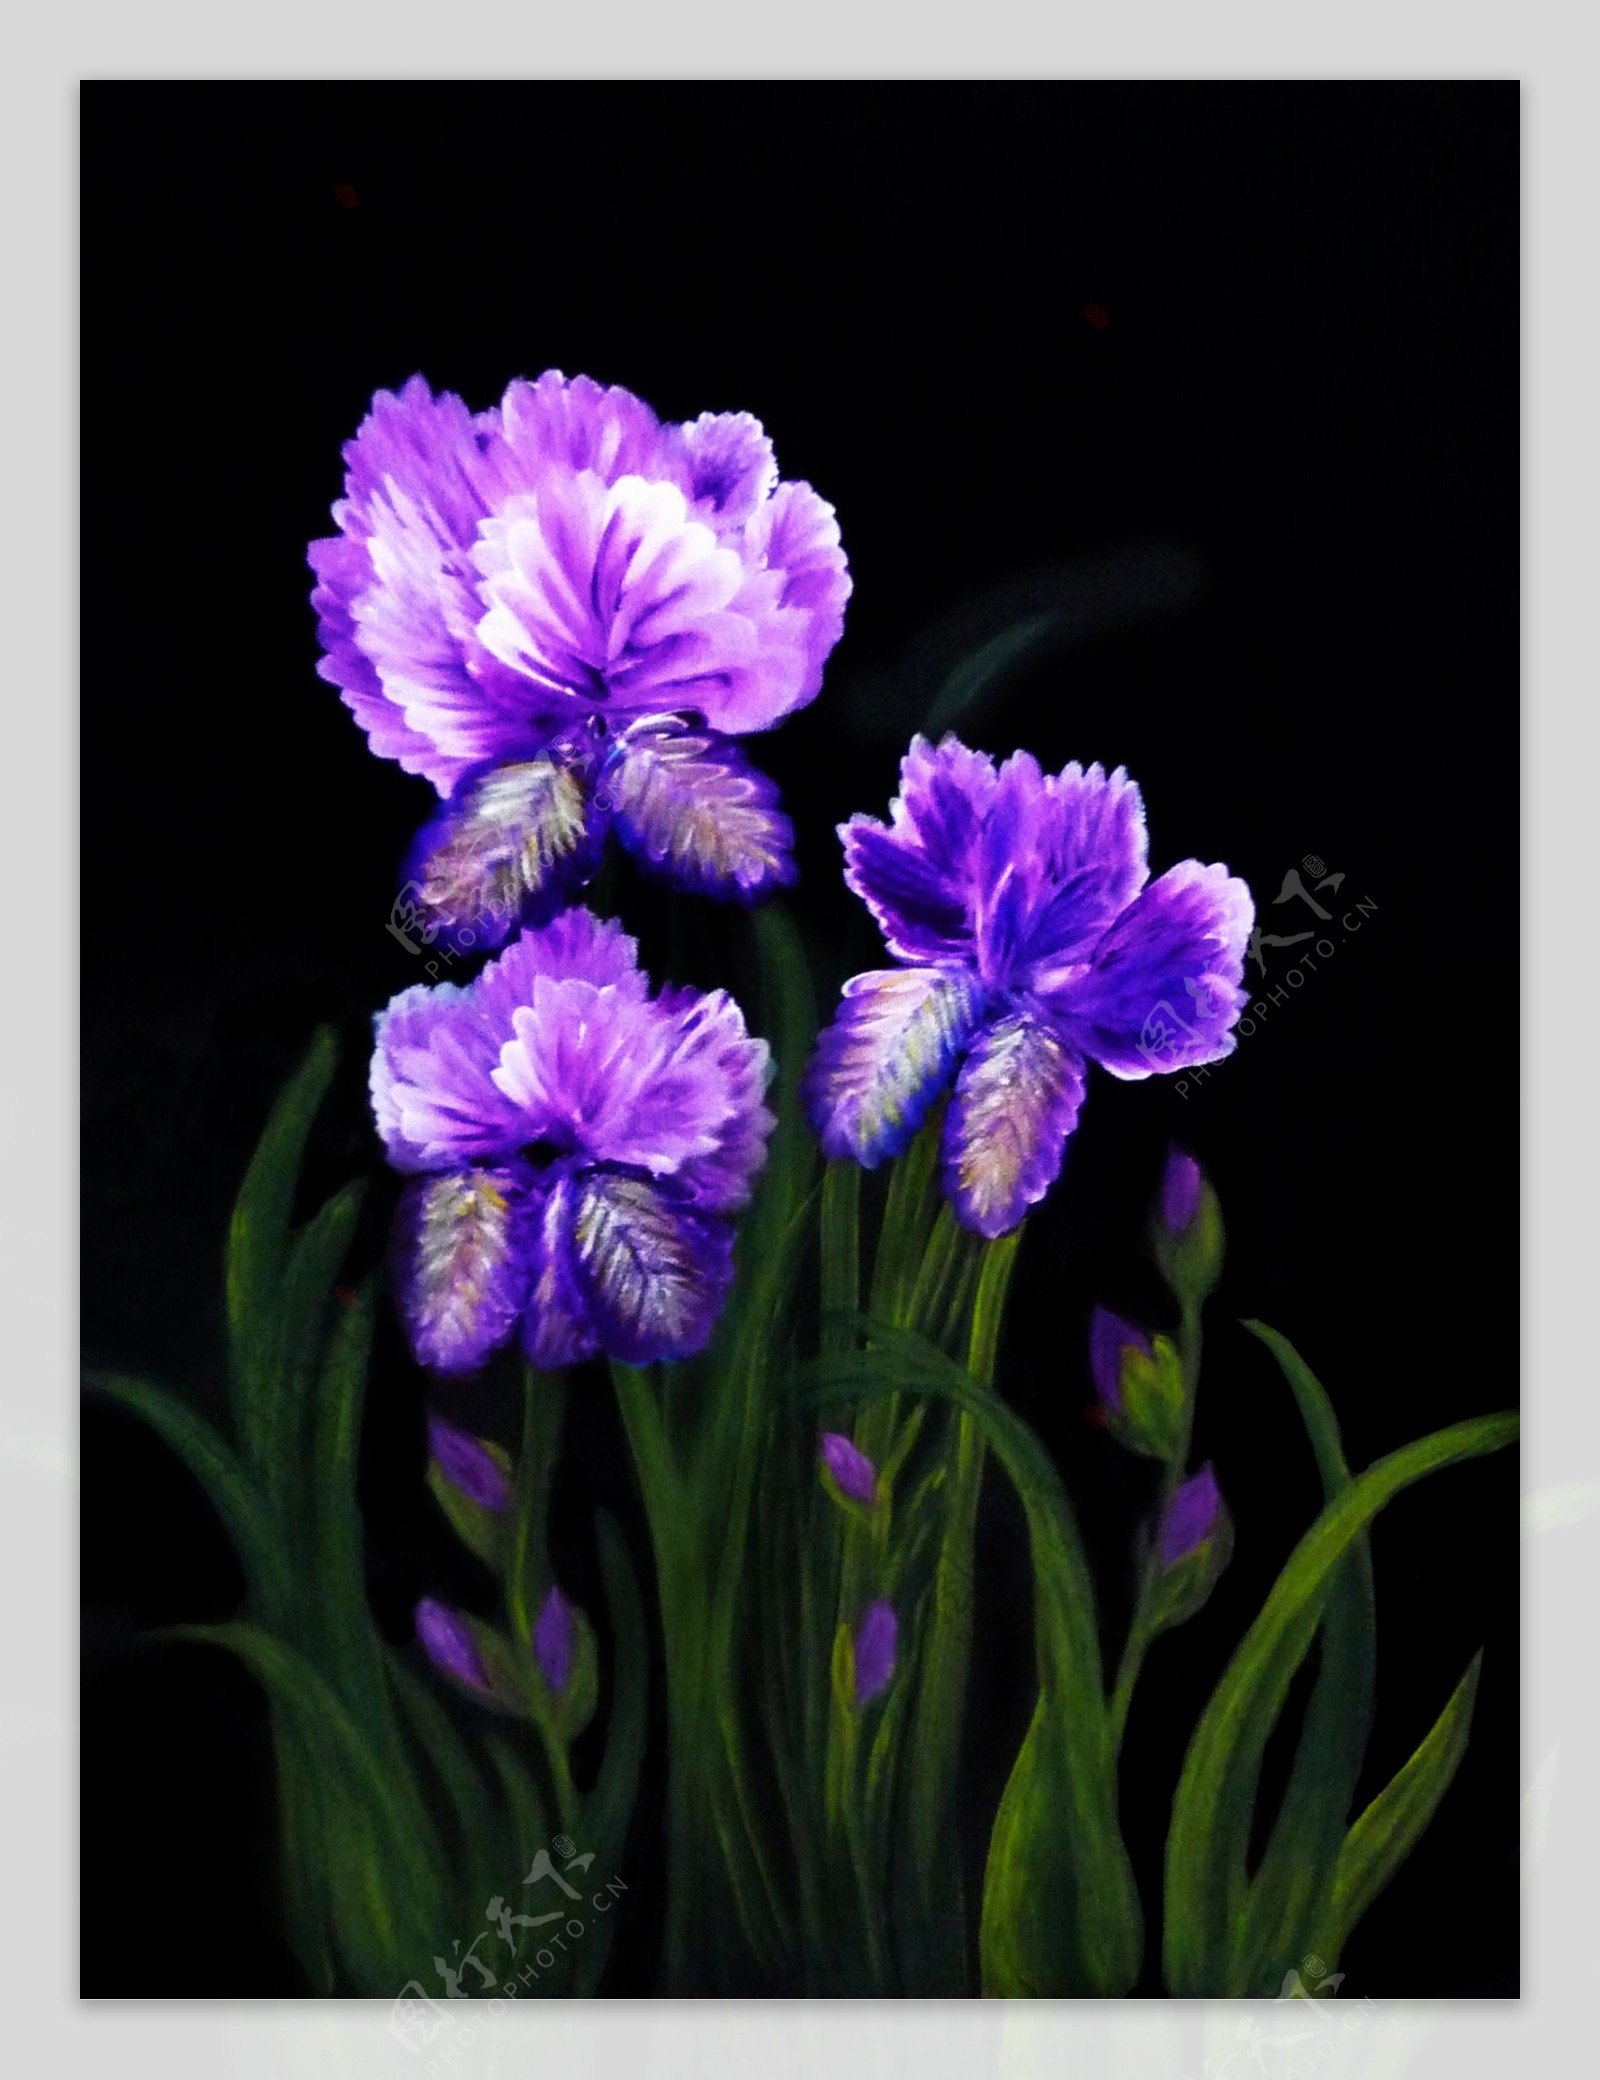 紫色花卉